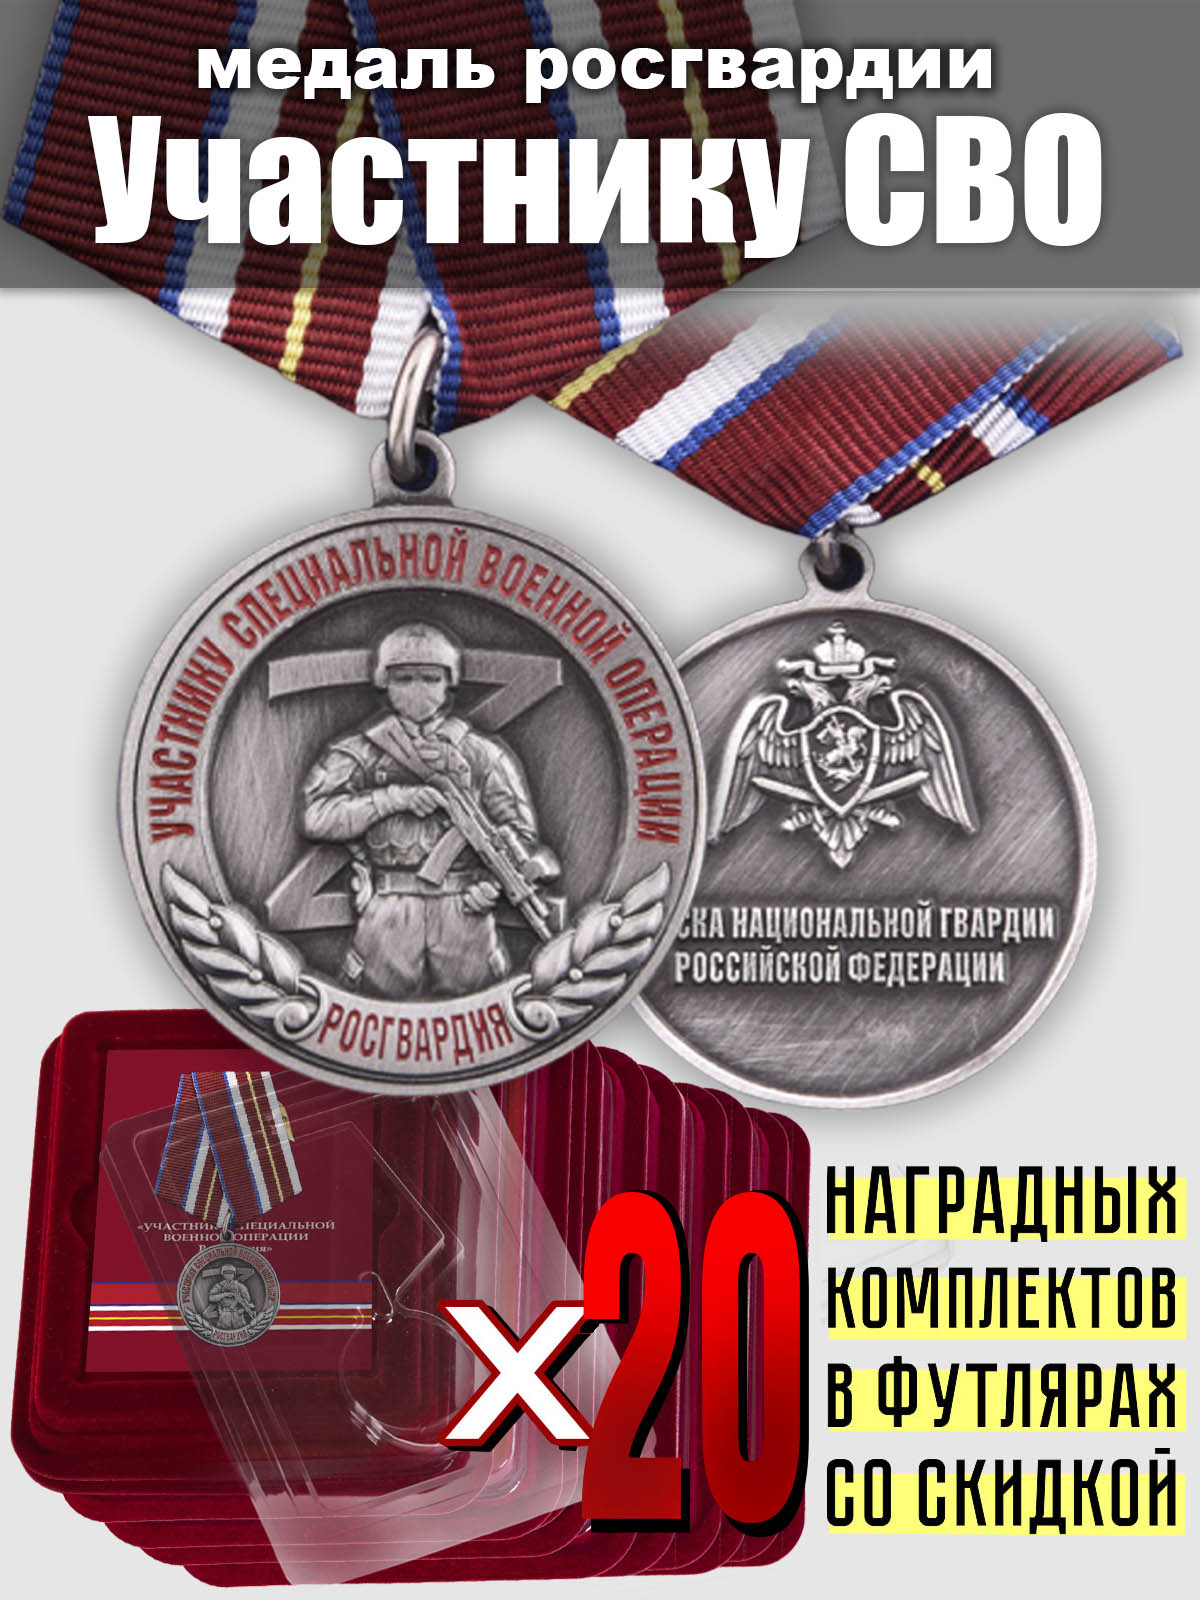 Медали Росгвардии "Участнику СВО" - комплект из 20 шт.